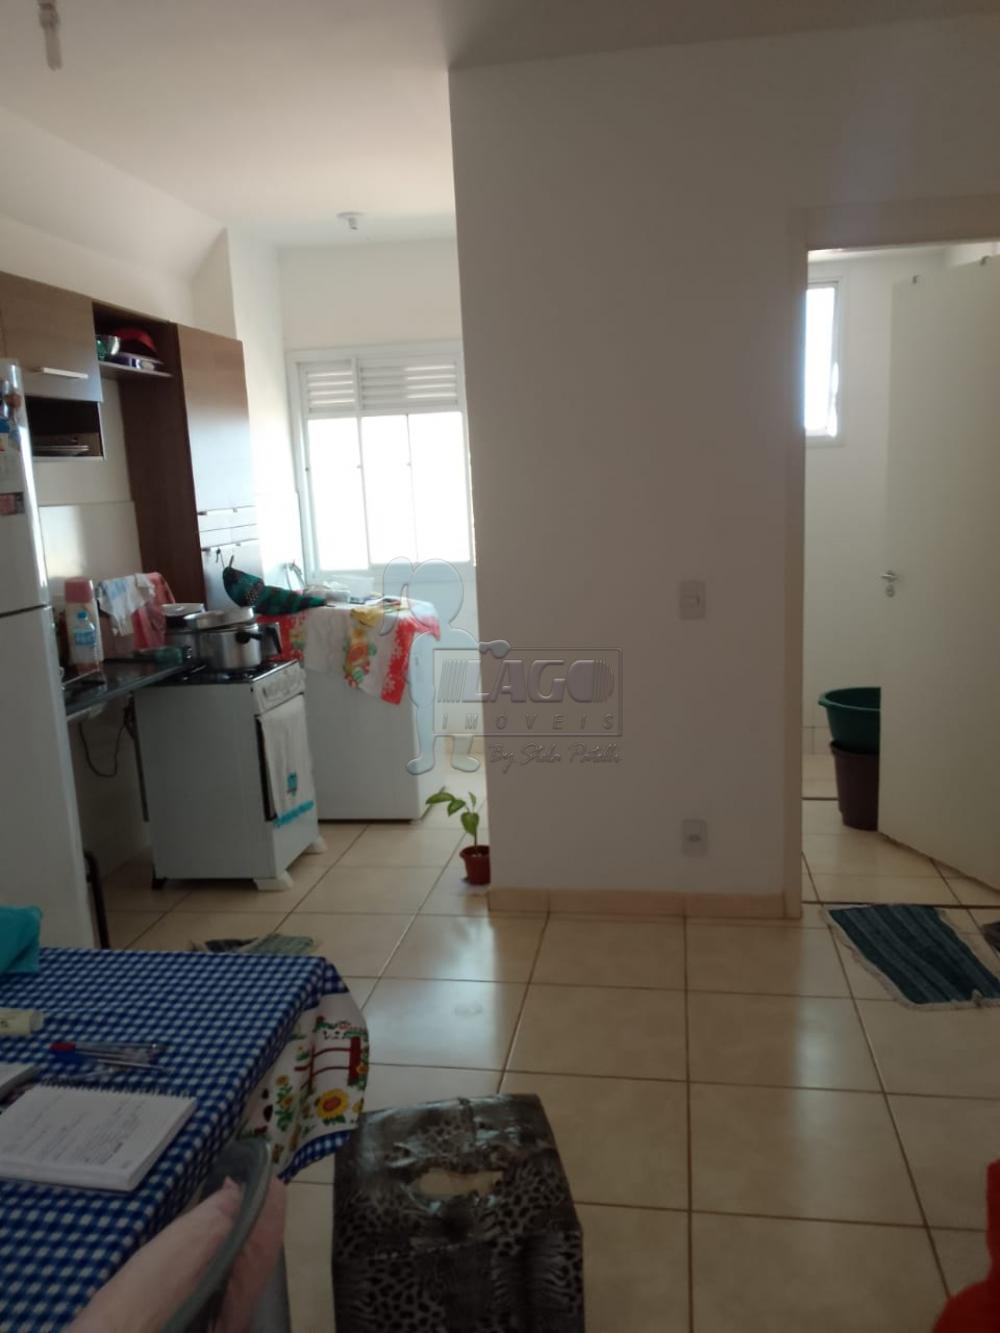 Alugar Apartamento / Padrão em Ribeirão Preto R$ 750,00 - Foto 2